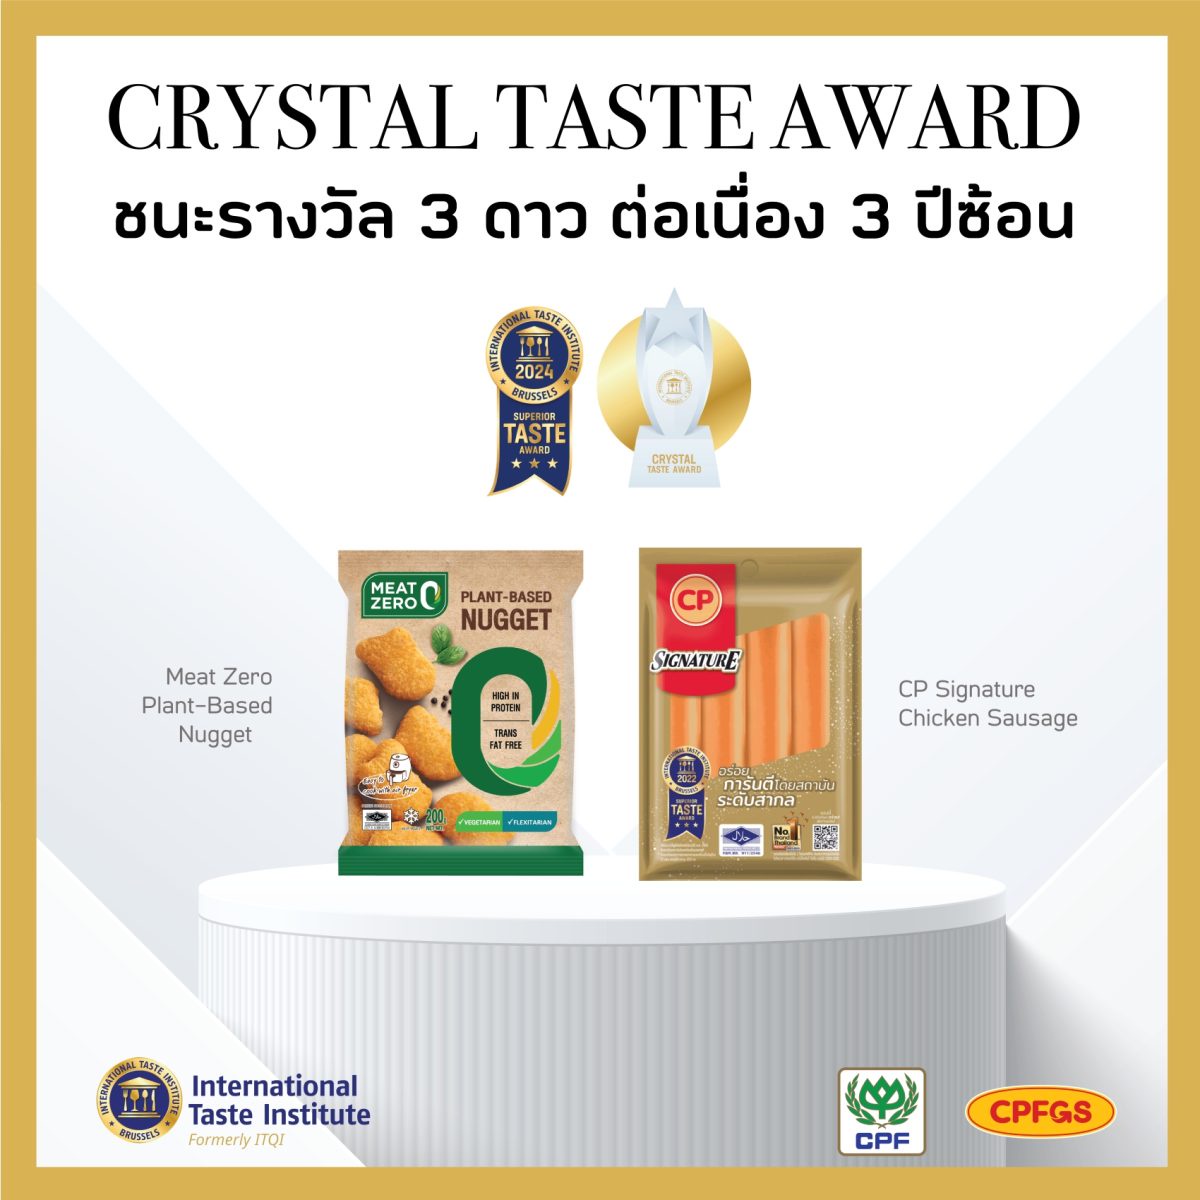 ซีพีเอฟ คว้ารางวัล Crystal Taste Award การันตีสุดยอดรสชาติระดับโลก 3 ปีซ้อน สร้างประสบการณ์ความอร่อยไร้พรมแดน